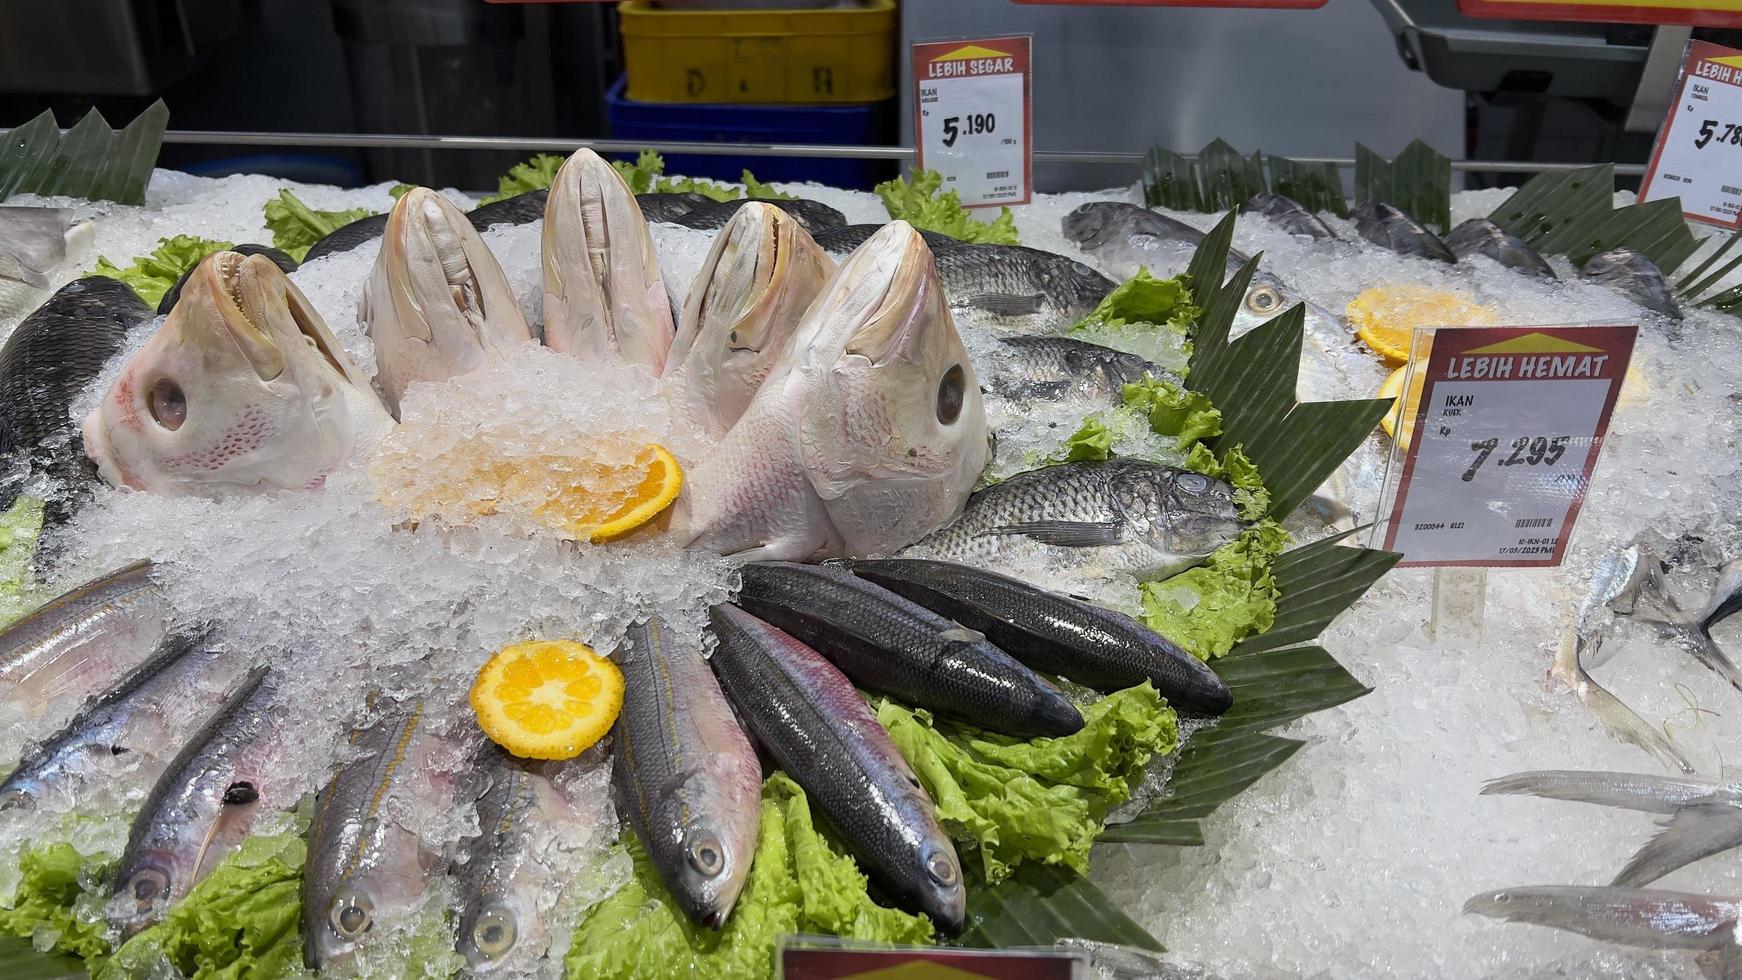 un montón de Fresco pescado en el supermercado foto